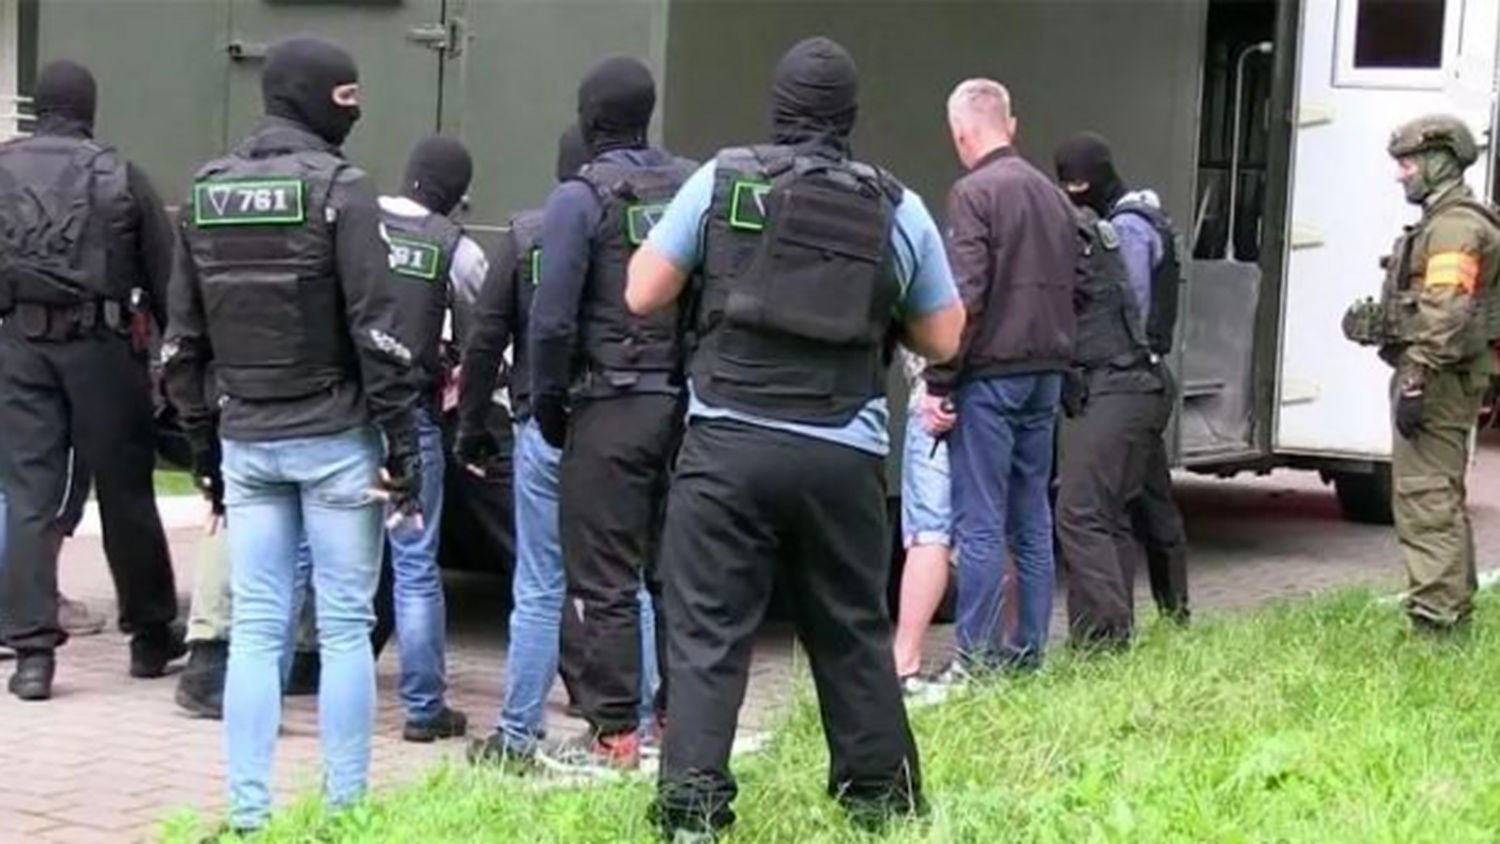 Облава по всей стране: в Чехии сотни полицейских начали спецоперацию по задержанию российских наемников